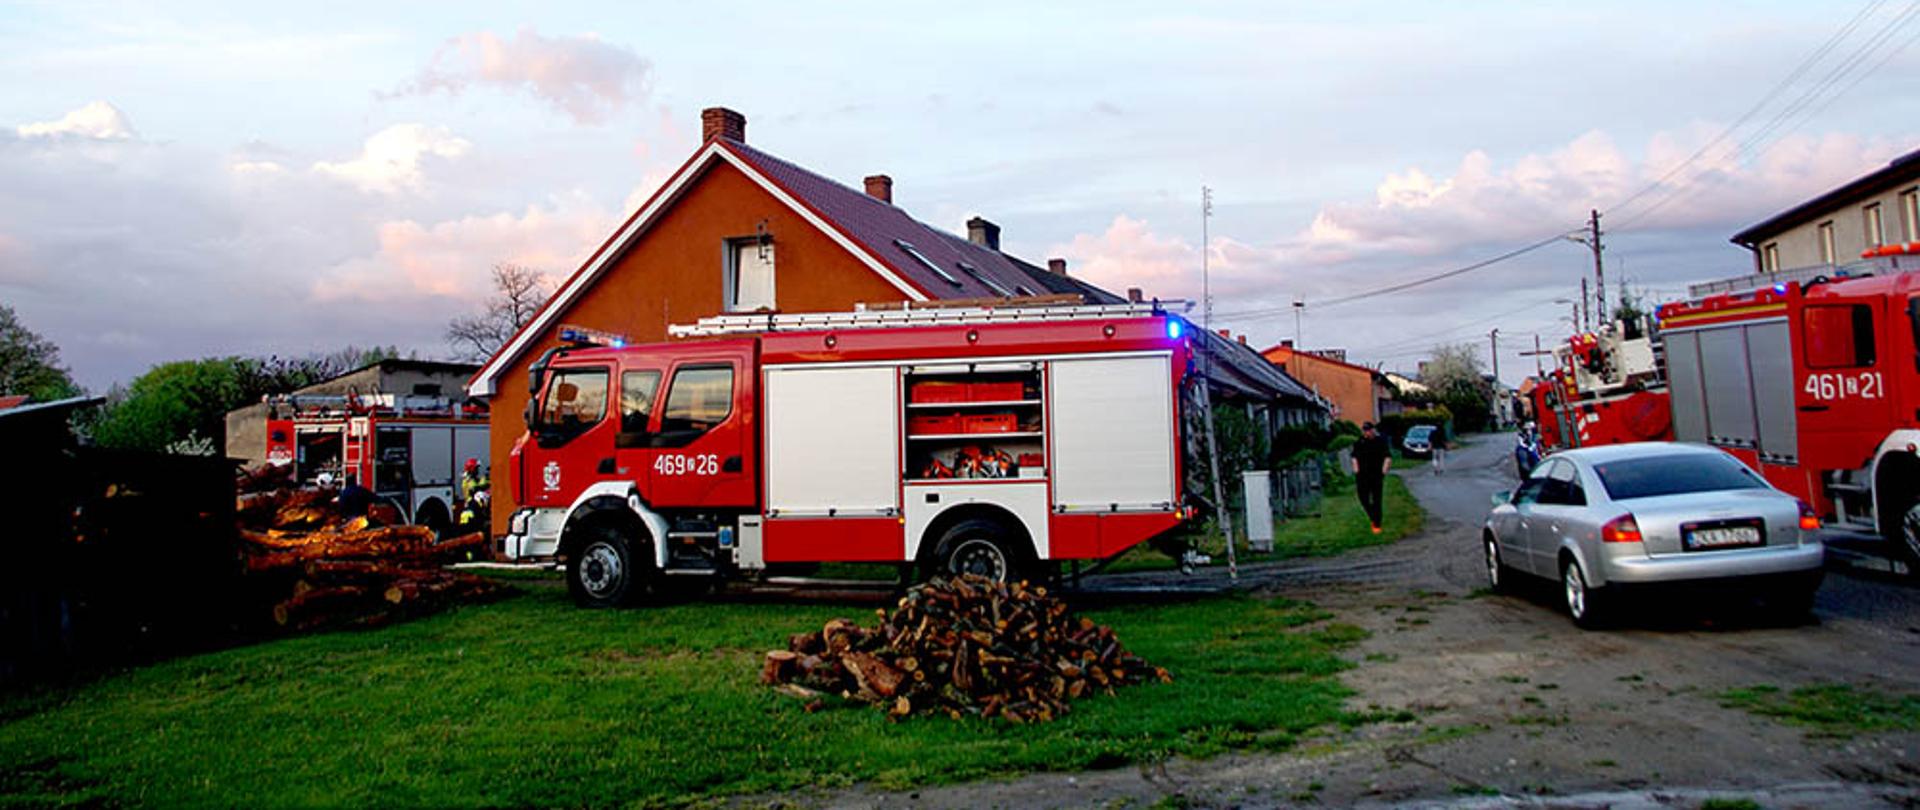 Zdjęcie przedstawia zabudowania wielorodzinne, 4 wozy straży pożarnej, ulicę oraz jeden pojazd osobowy.